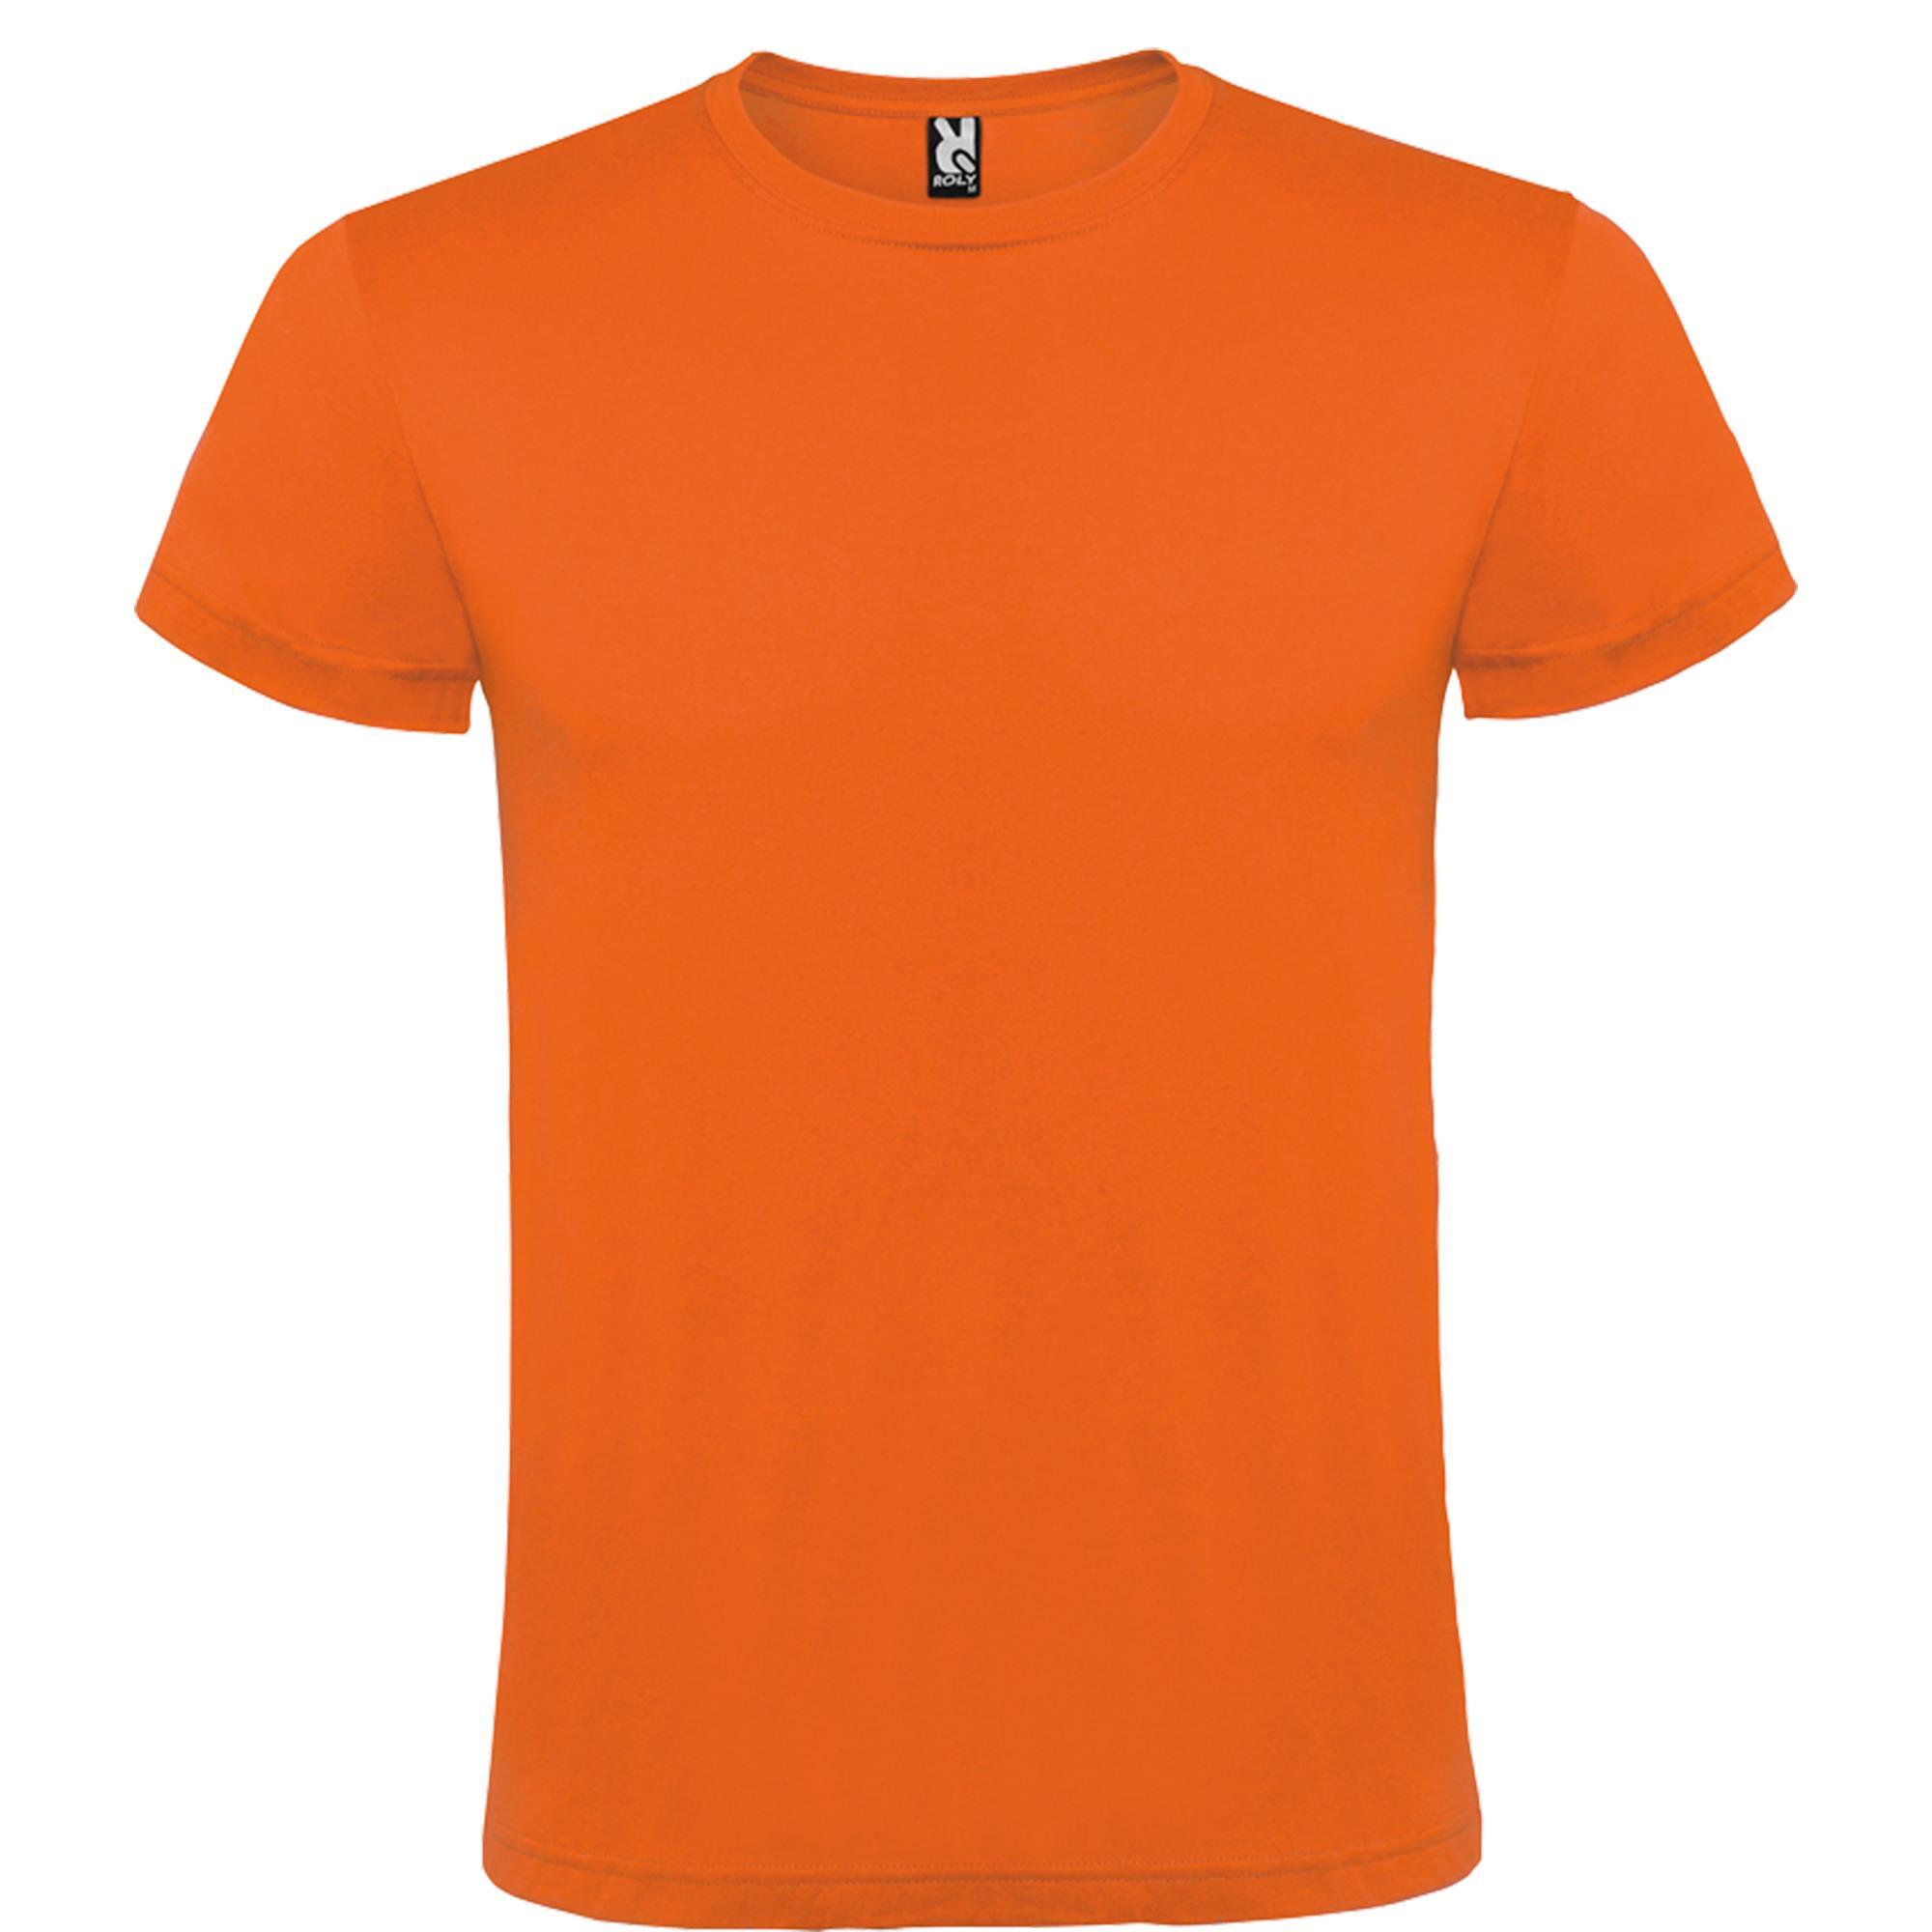 Rondgebreide T-shirt unisex voor volwassen oranje personalisatie mogelijk